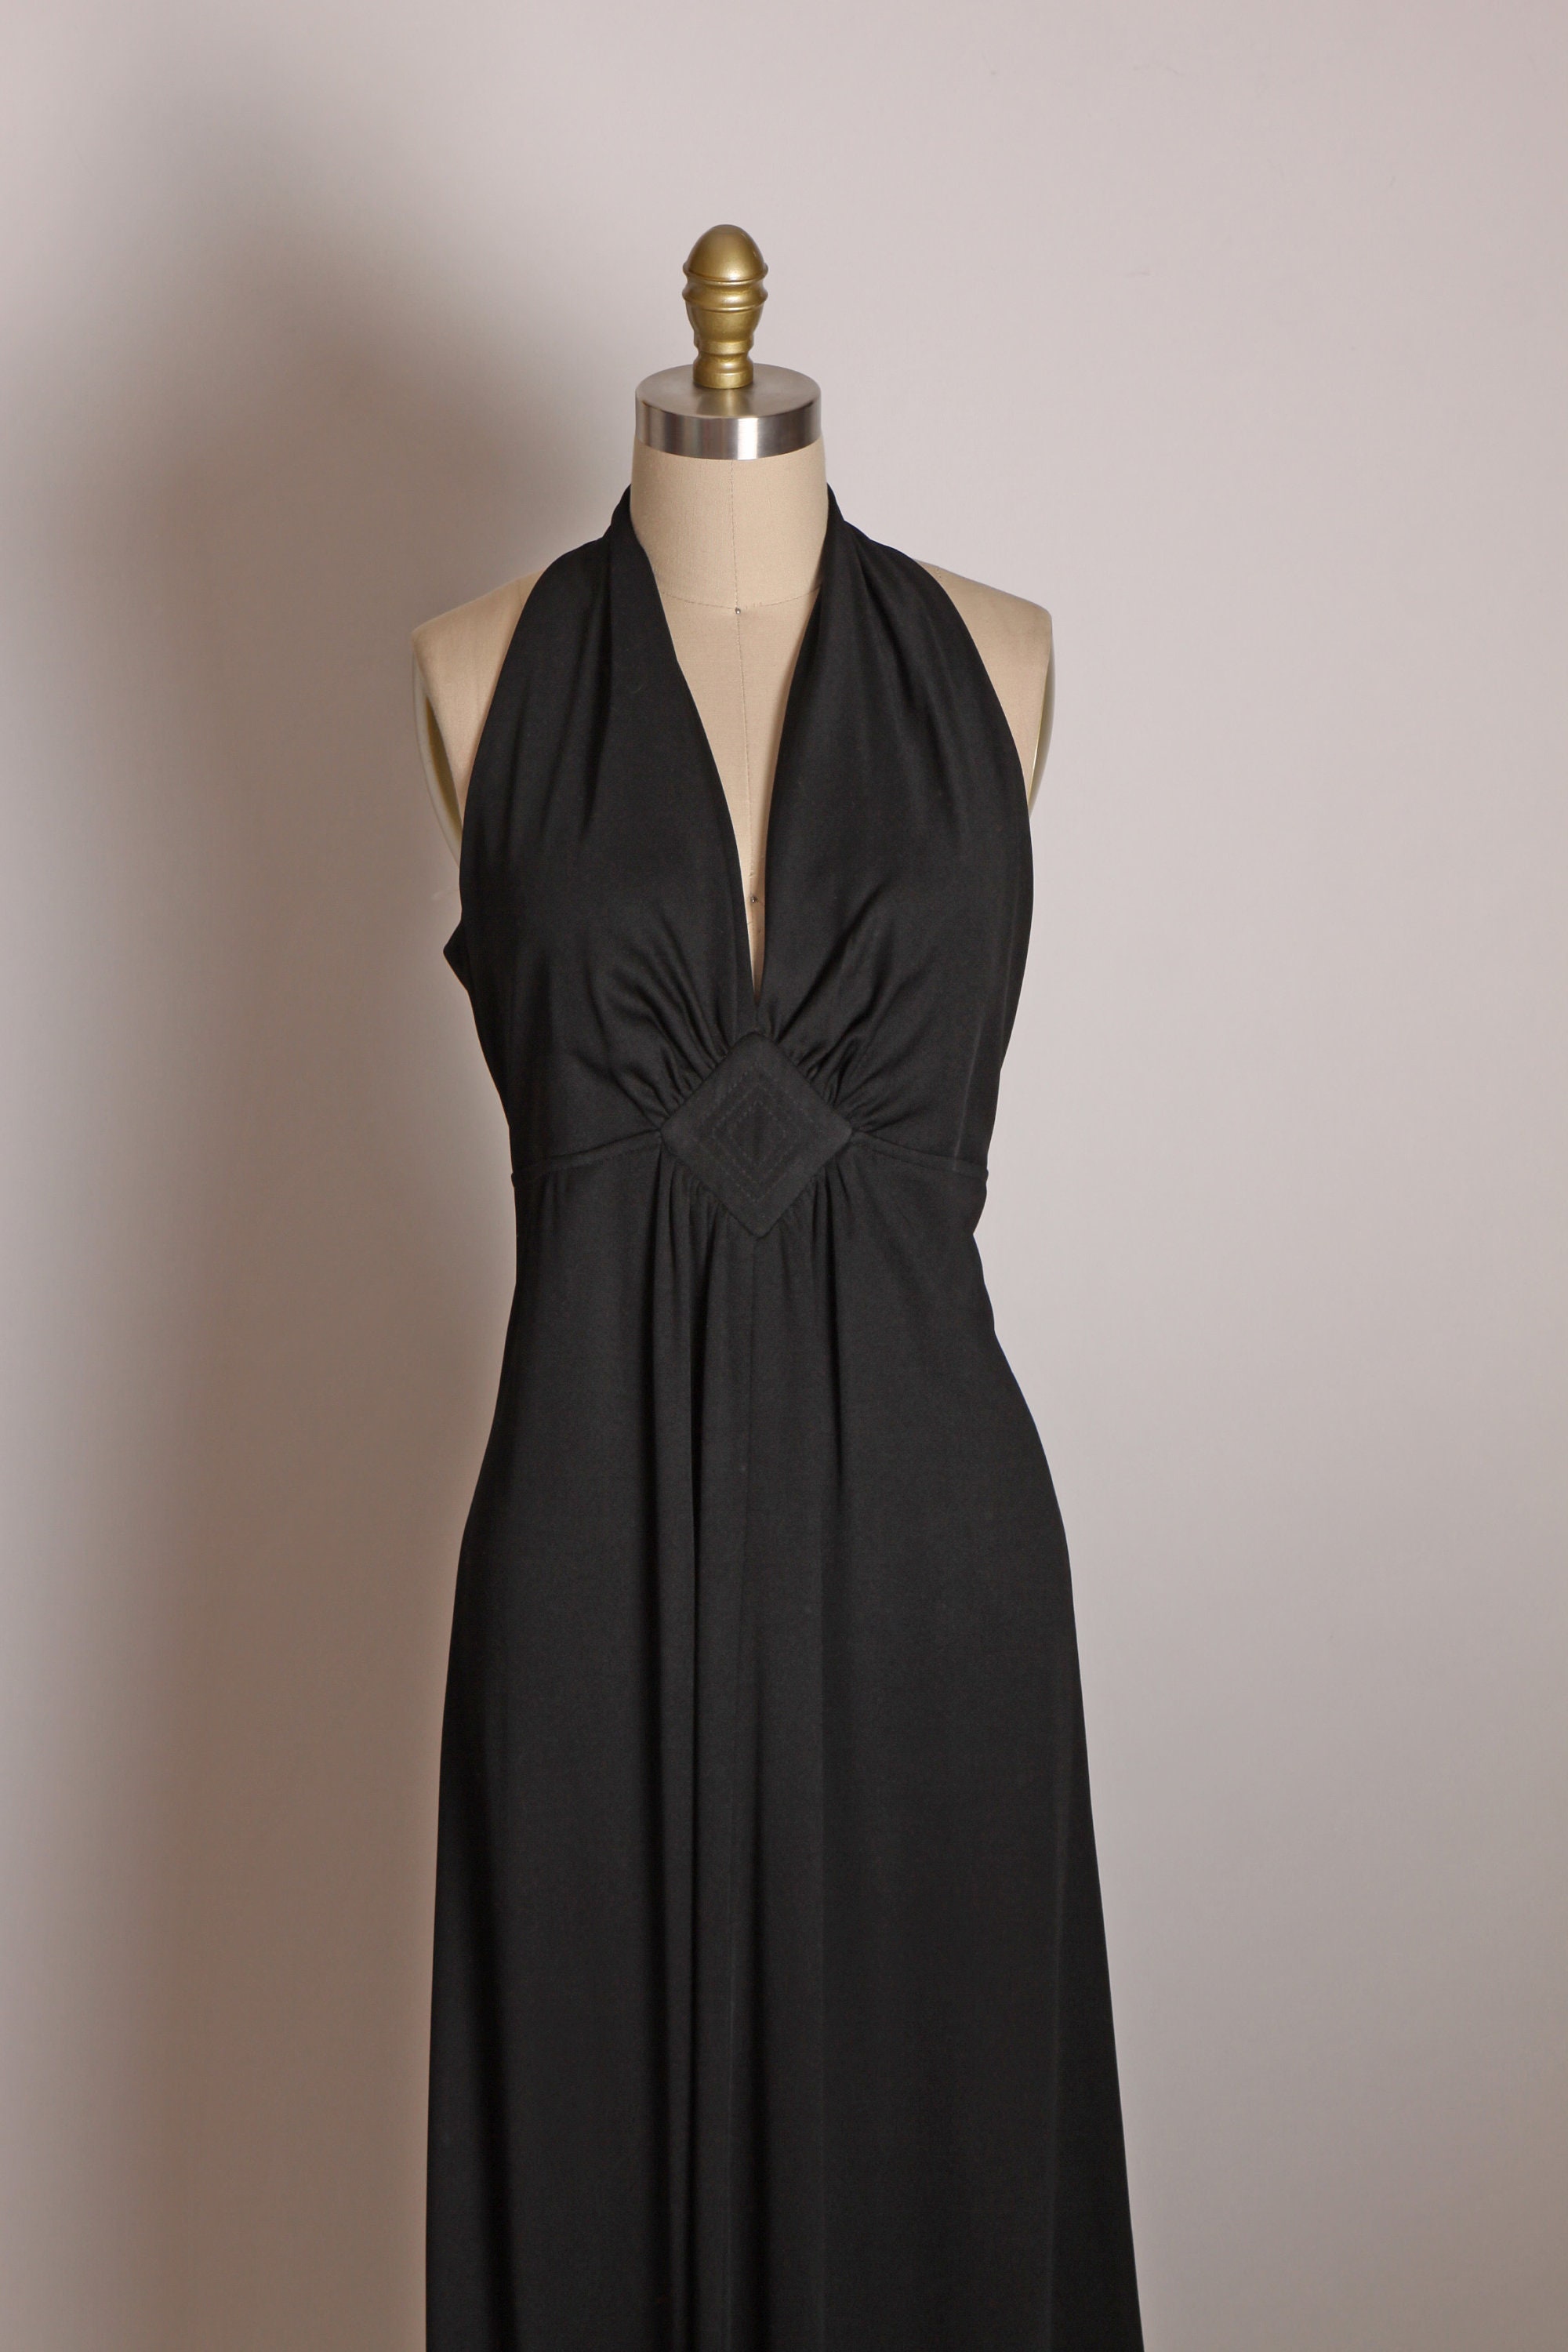 1970s Black Sleeveless Full Length Maxi Formal Cocktail Dress - Etsy